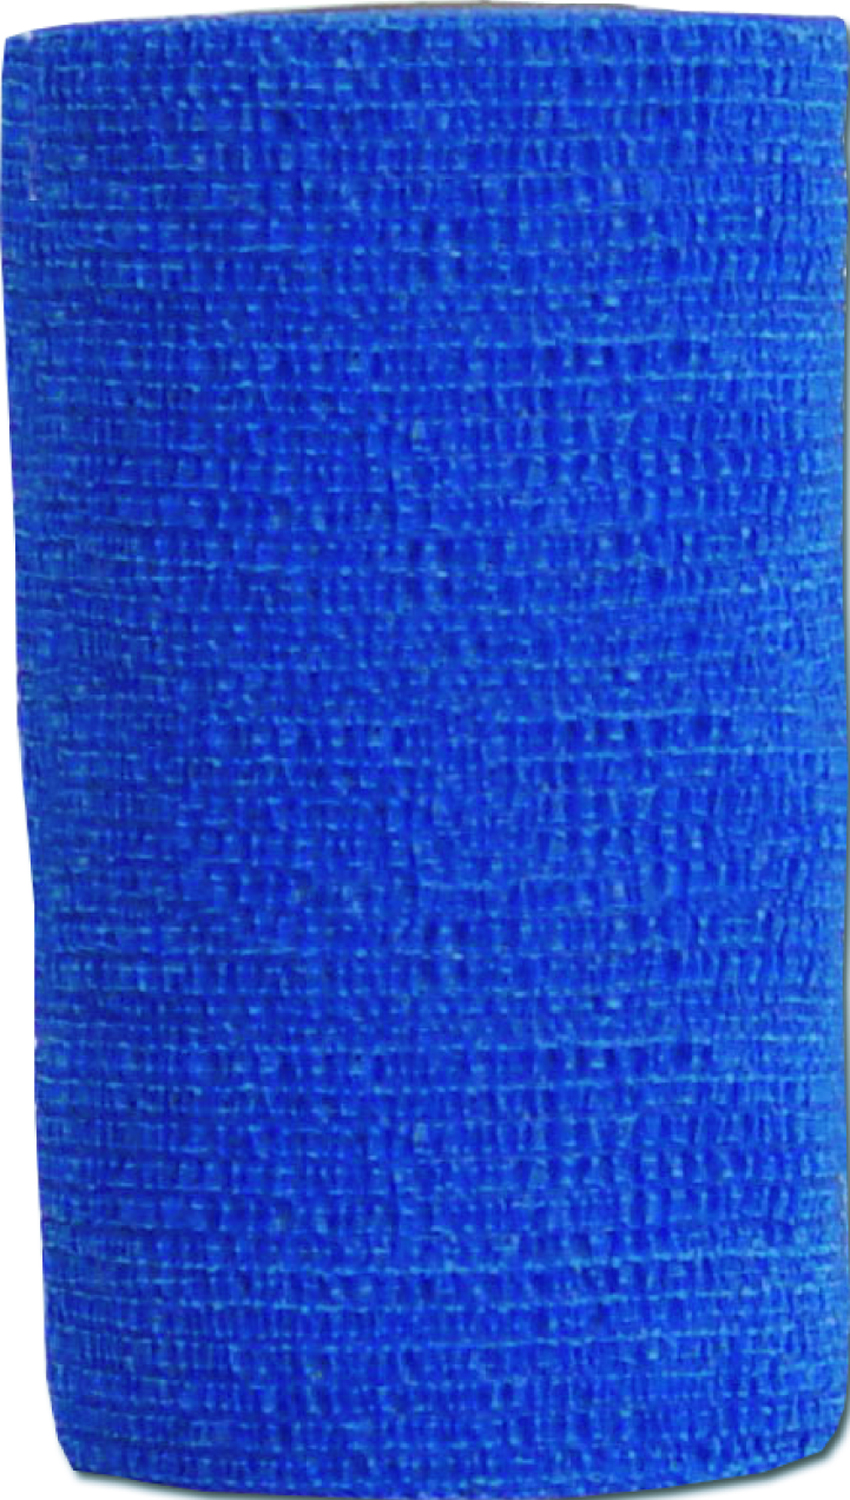 Co-Flex 4" x 5 yd Bandage Blue